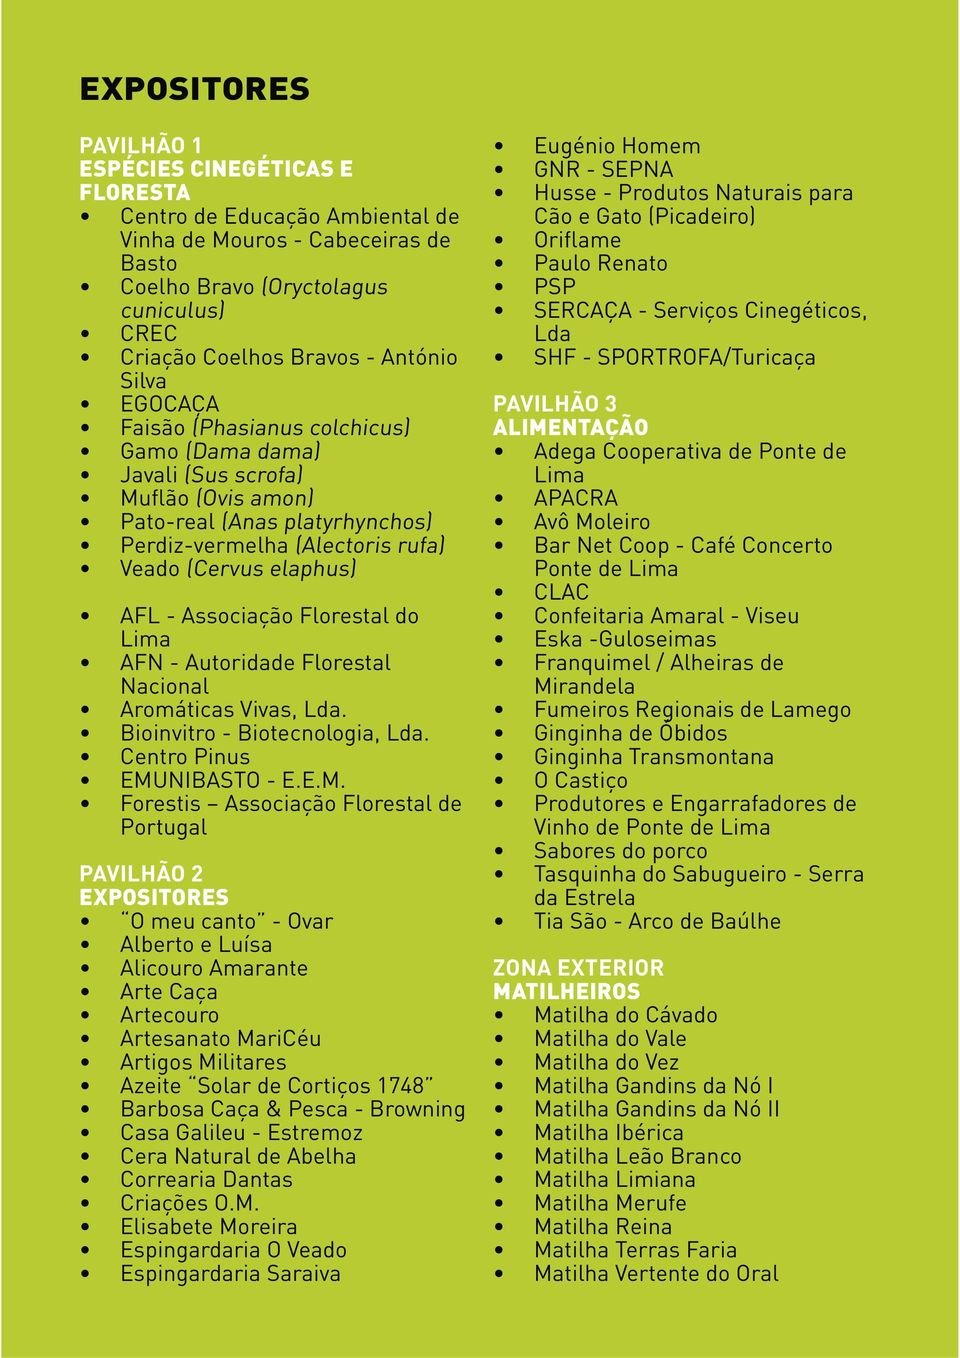 Associação Florestal do Lima AFN - Autoridade Florestal Nacional Aromáticas Vivas, Lda. Bioinvitro - Biotecnologia, Lda. Centro Pinus EMU